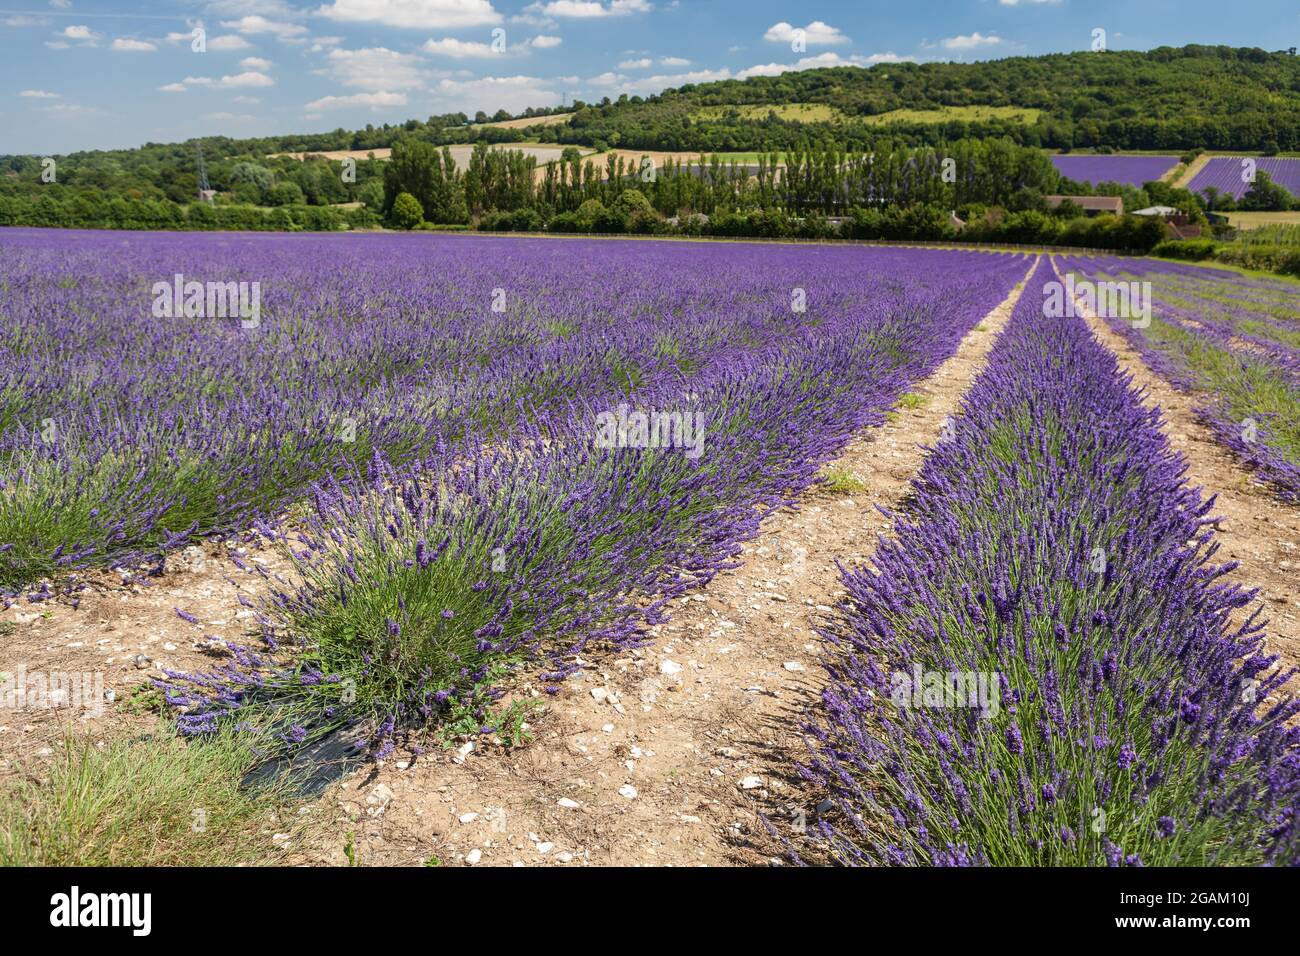 Castle Farm Lavender fields in Kent, UK. Stock Photo